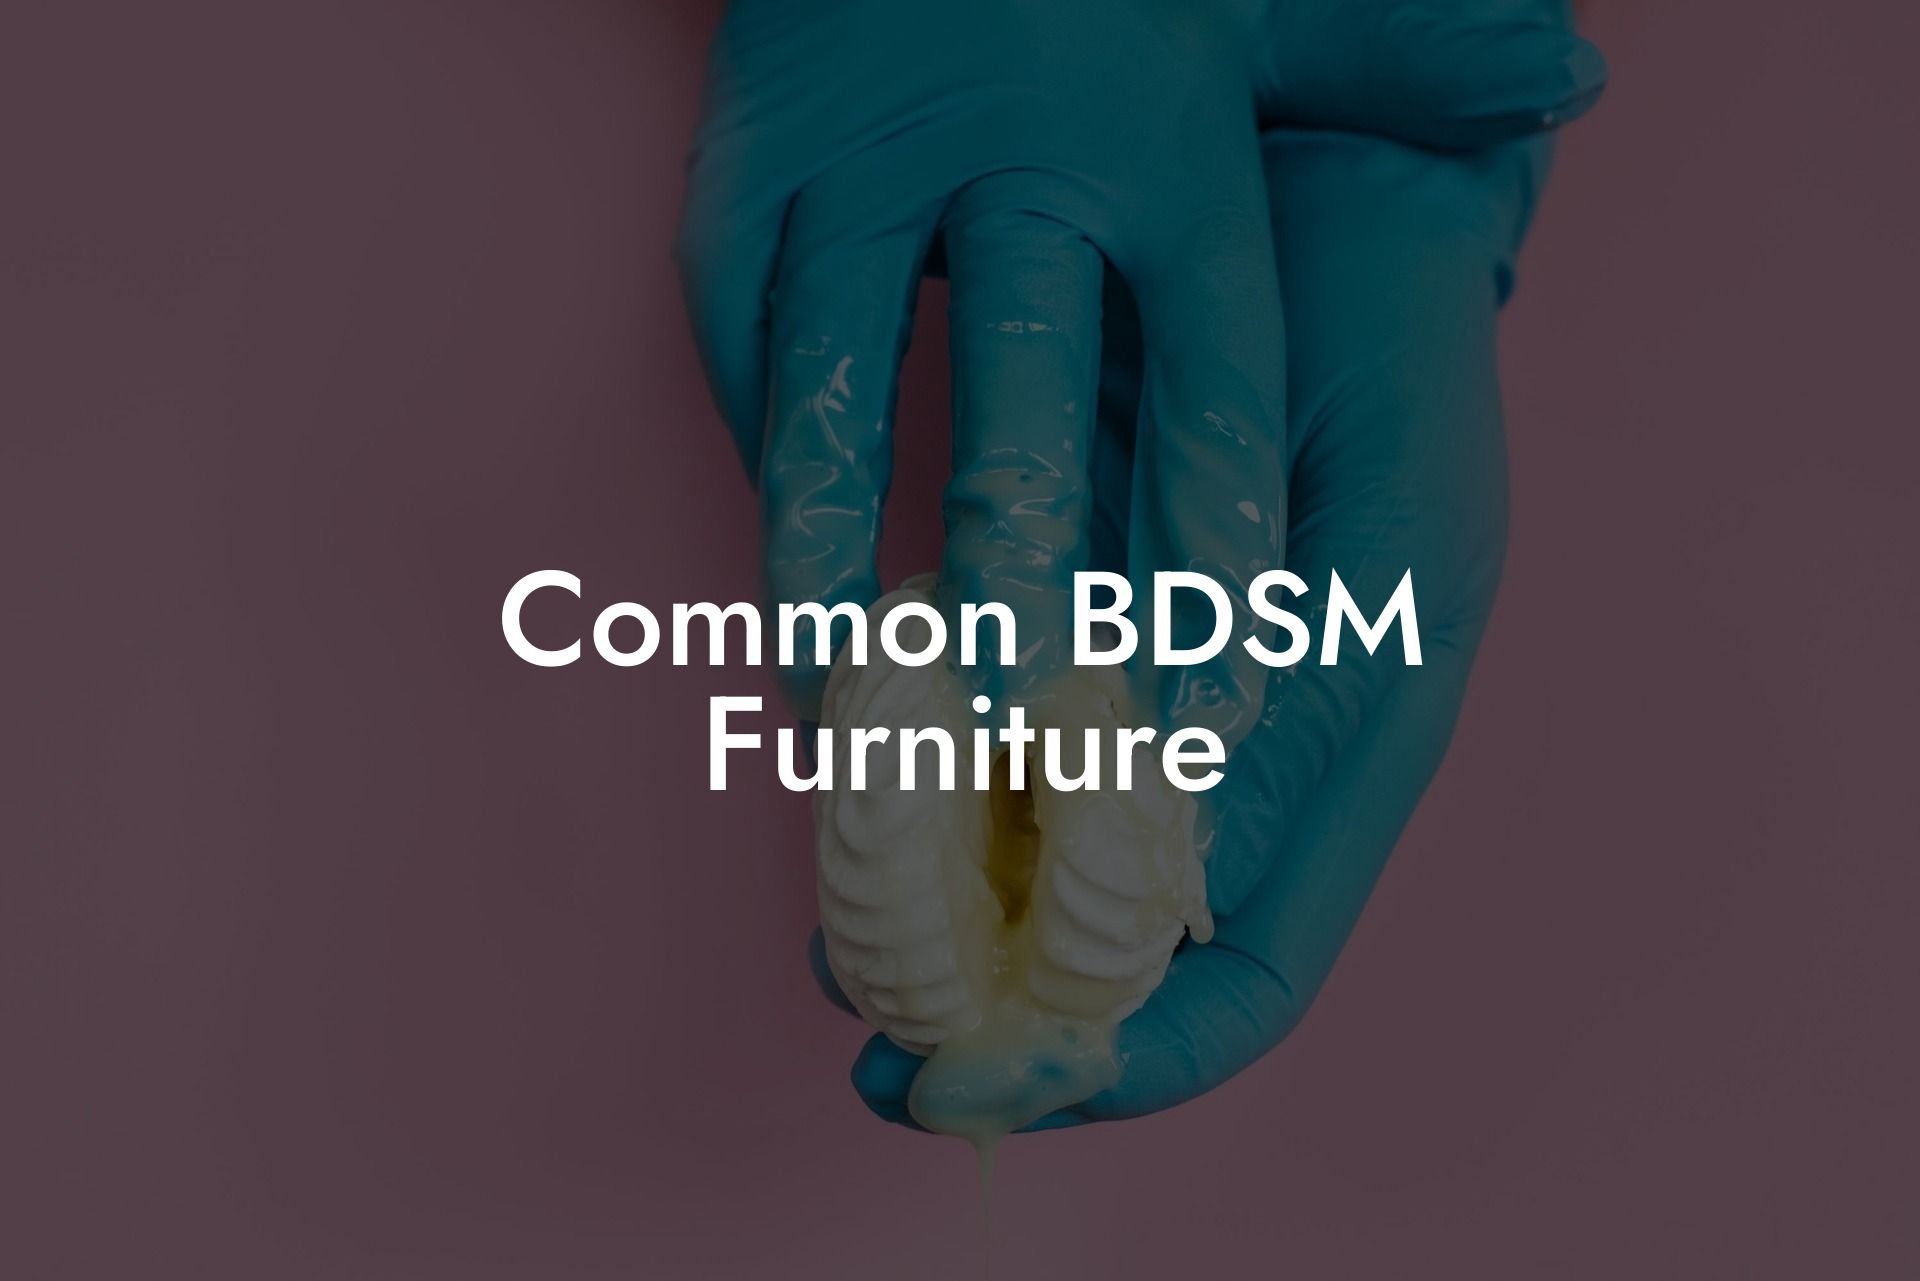 Common BDSM Furniture